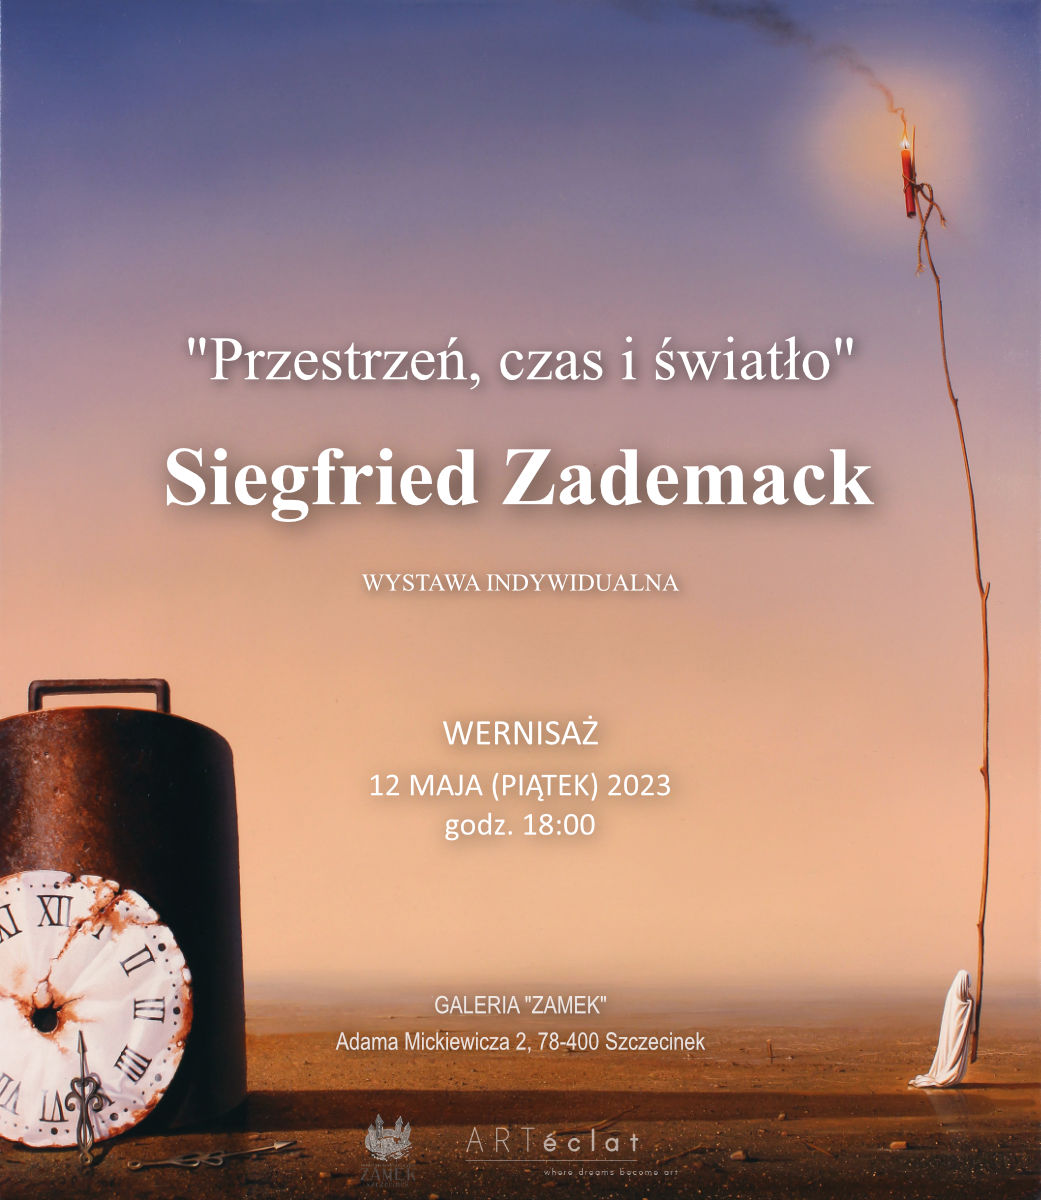 Arteclat - Siegfried Zademack wystawa